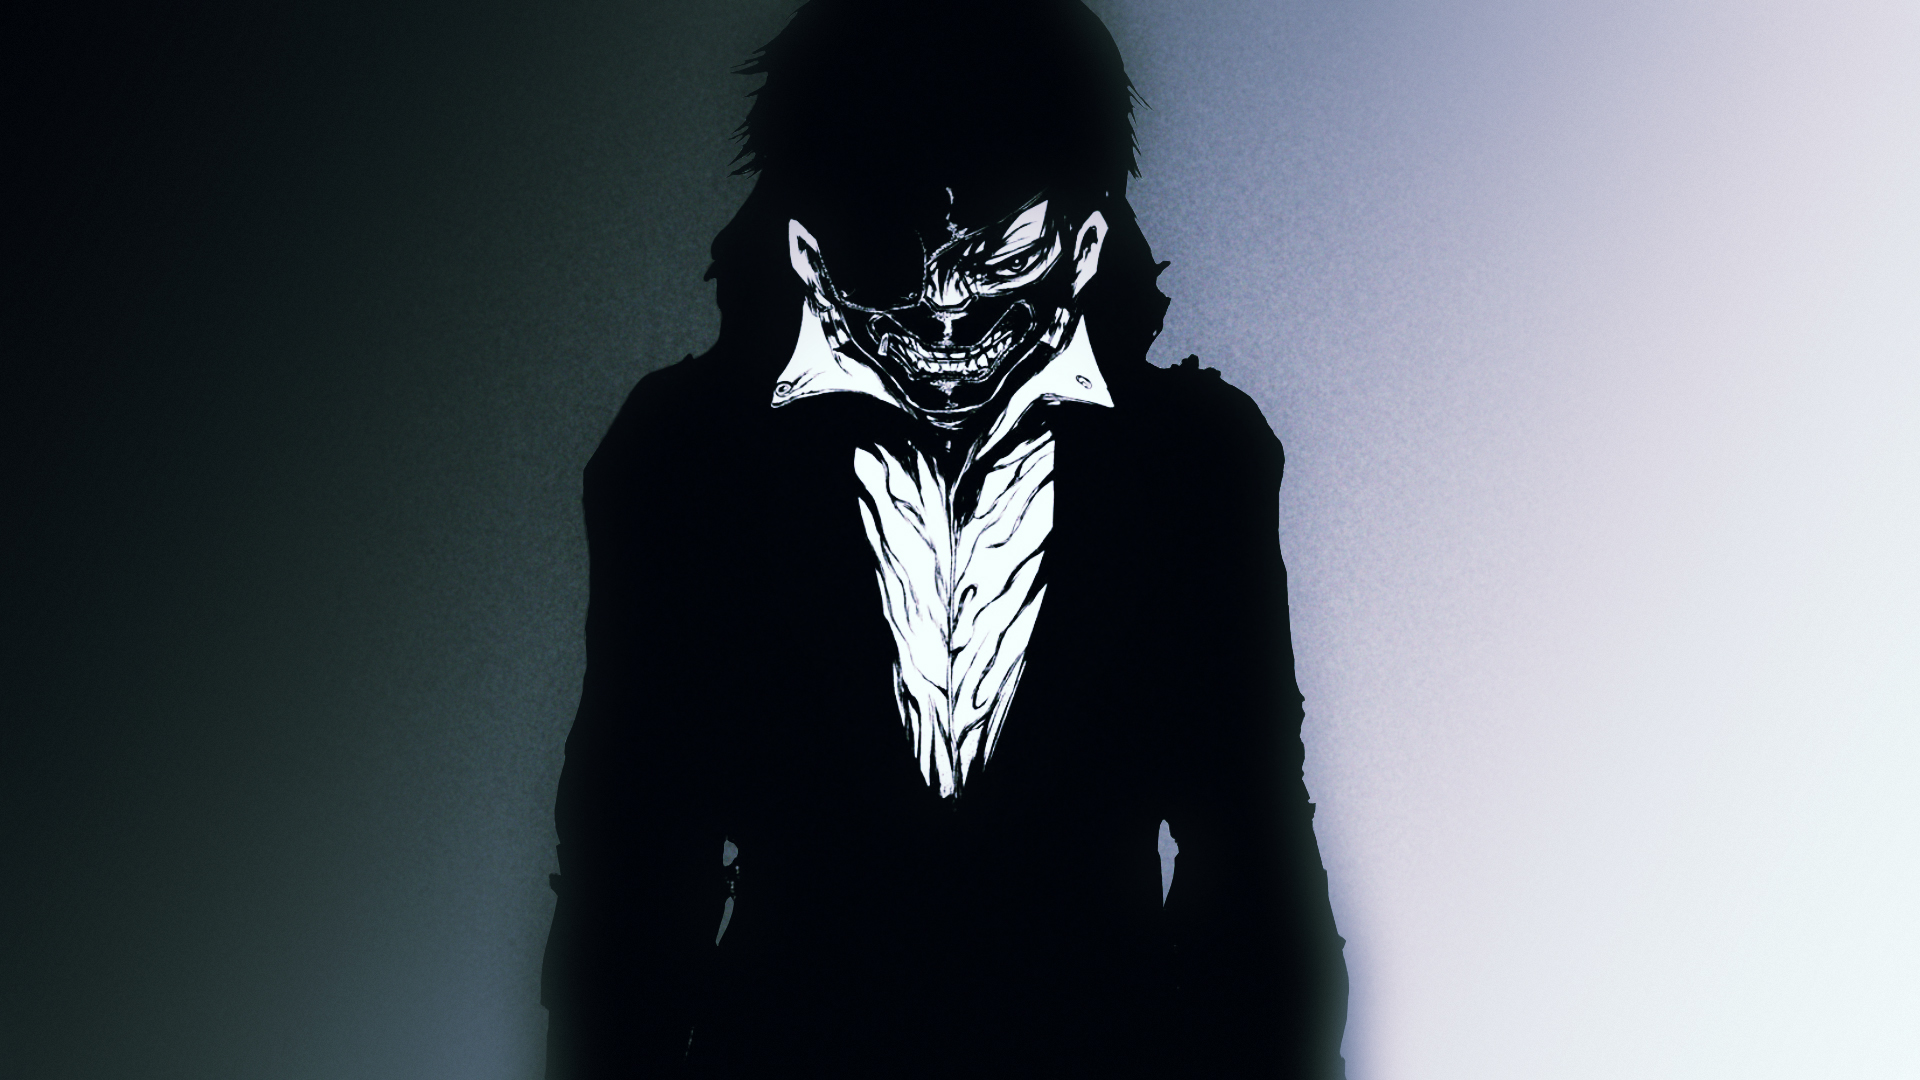 Download mobile wallpaper Anime, Ken Kaneki, Tokyo Ghoul for free.